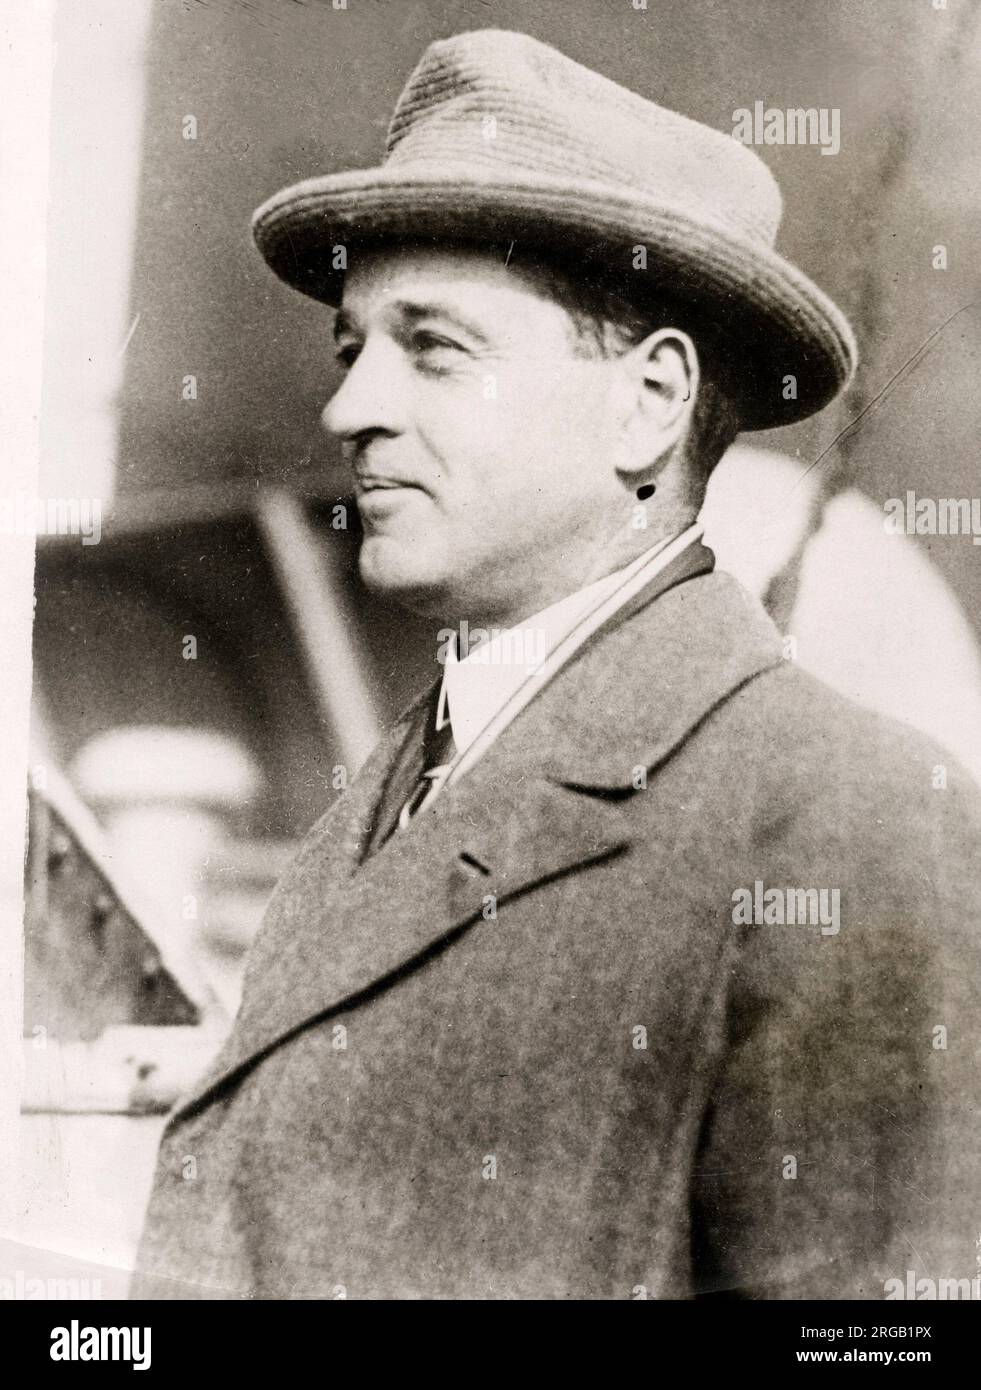 William Kissam Vanderbilt II (26 ottobre 1878 – 8 gennaio 1944) è stato un appassionato di automobilismo e diportista, membro della famiglia Vanderbilt americana Foto Stock